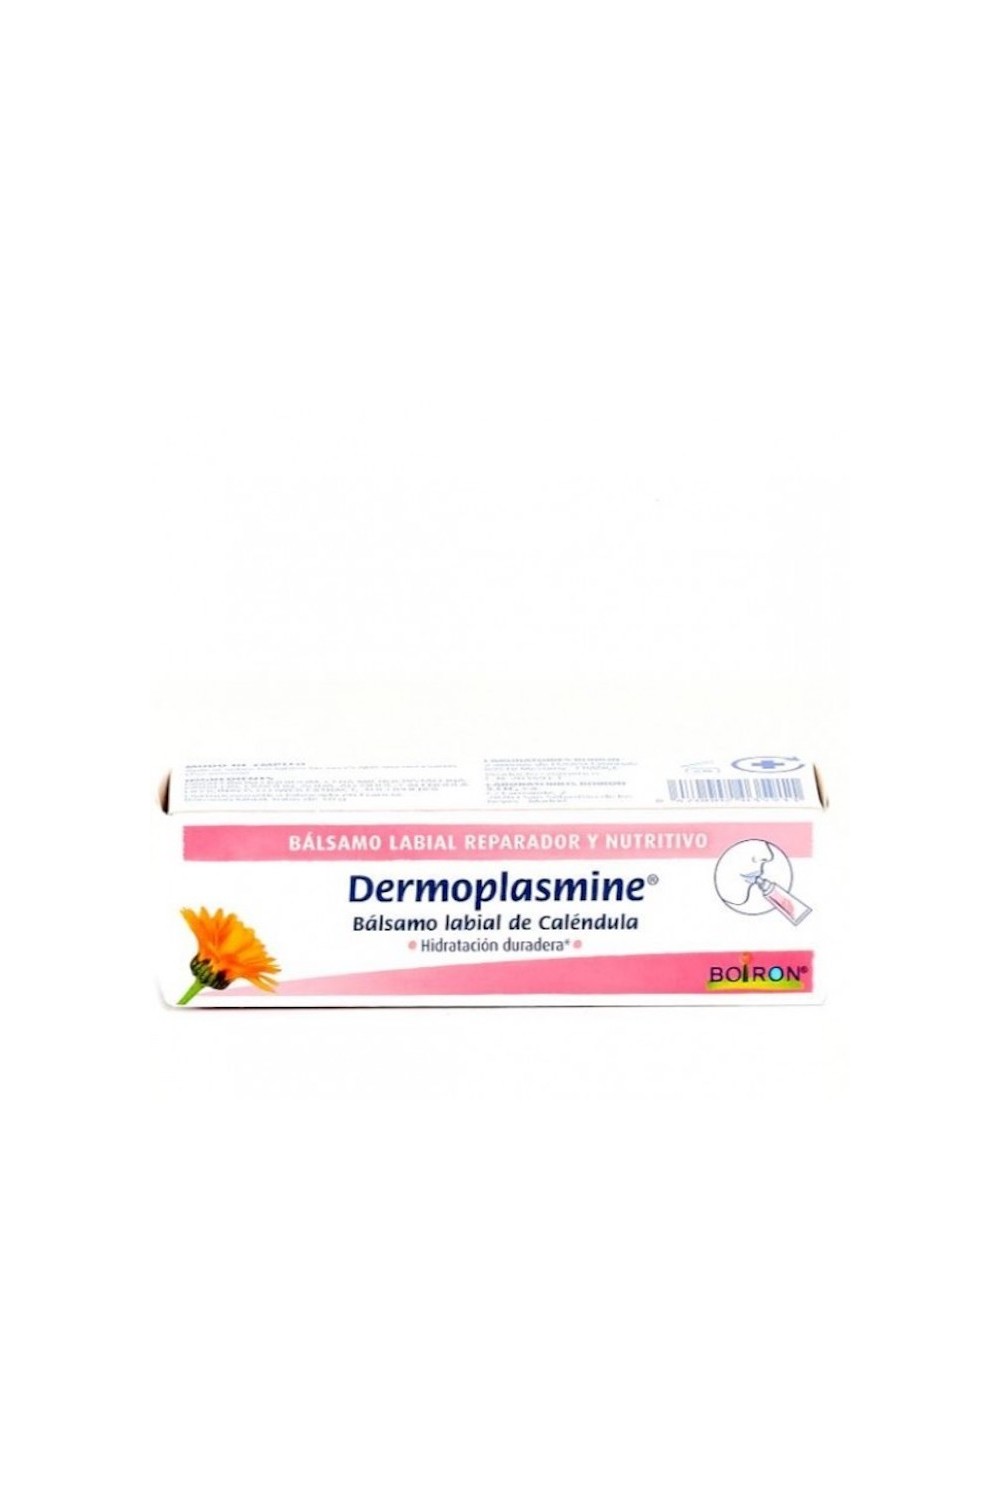 BOIRON - Dermoplasmine Calendula Lip Balm 10g